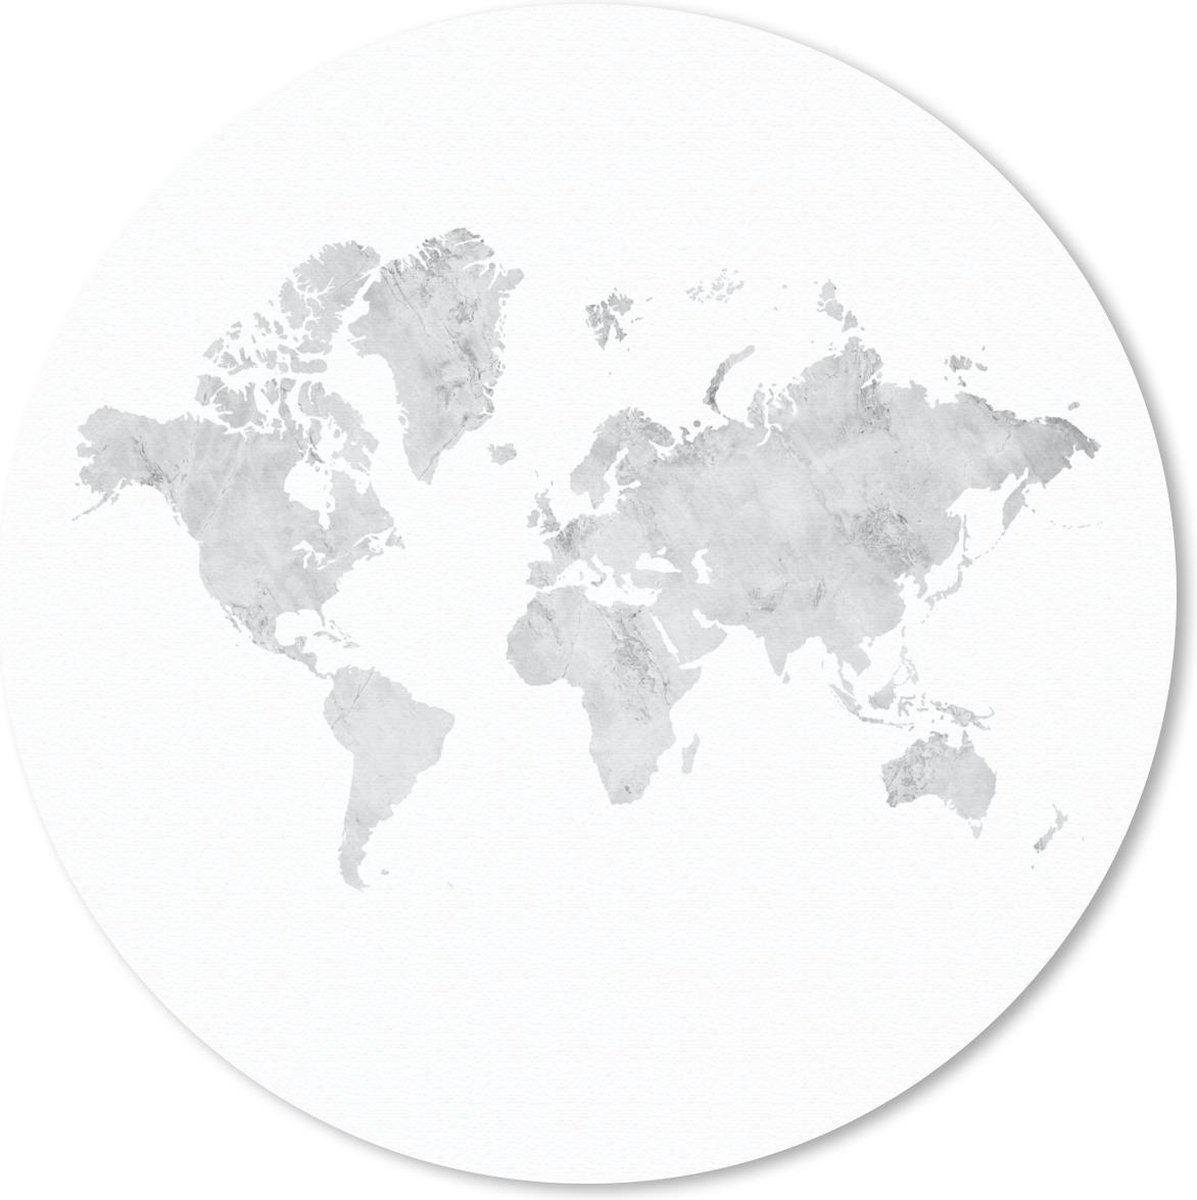 Muismat - Mousepad - Rond - Wereldkaart - Marmer print - Grijs - 50x50 cm - Ronde muismat